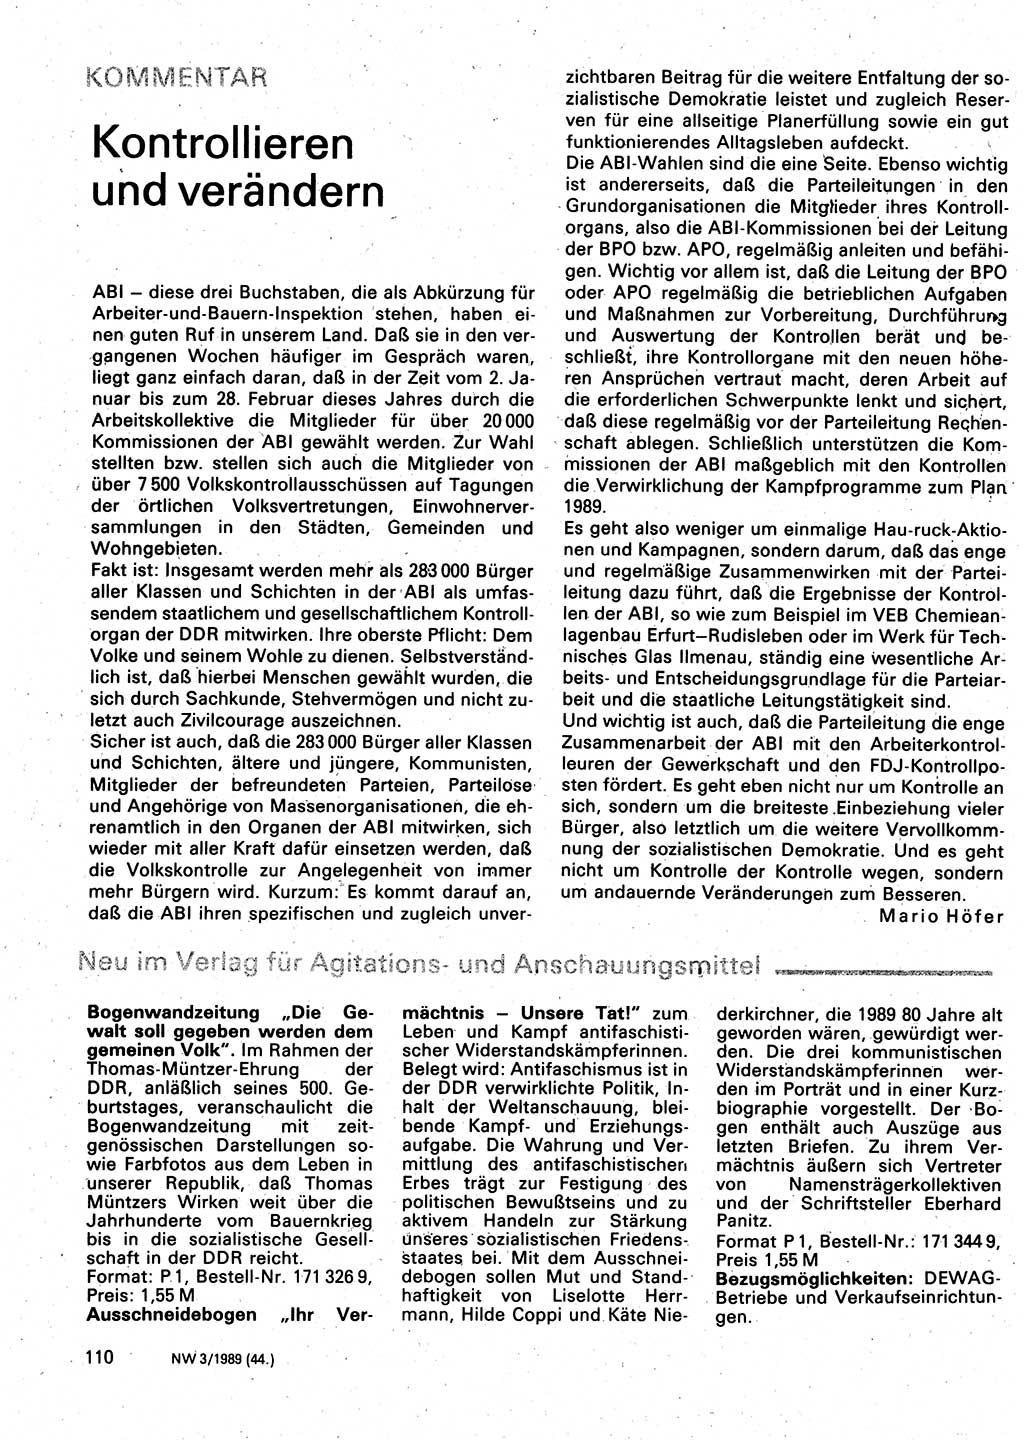 Neuer Weg (NW), Organ des Zentralkomitees (ZK) der SED (Sozialistische Einheitspartei Deutschlands) für Fragen des Parteilebens, 44. Jahrgang [Deutsche Demokratische Republik (DDR)] 1989, Seite 110 (NW ZK SED DDR 1989, S. 110)